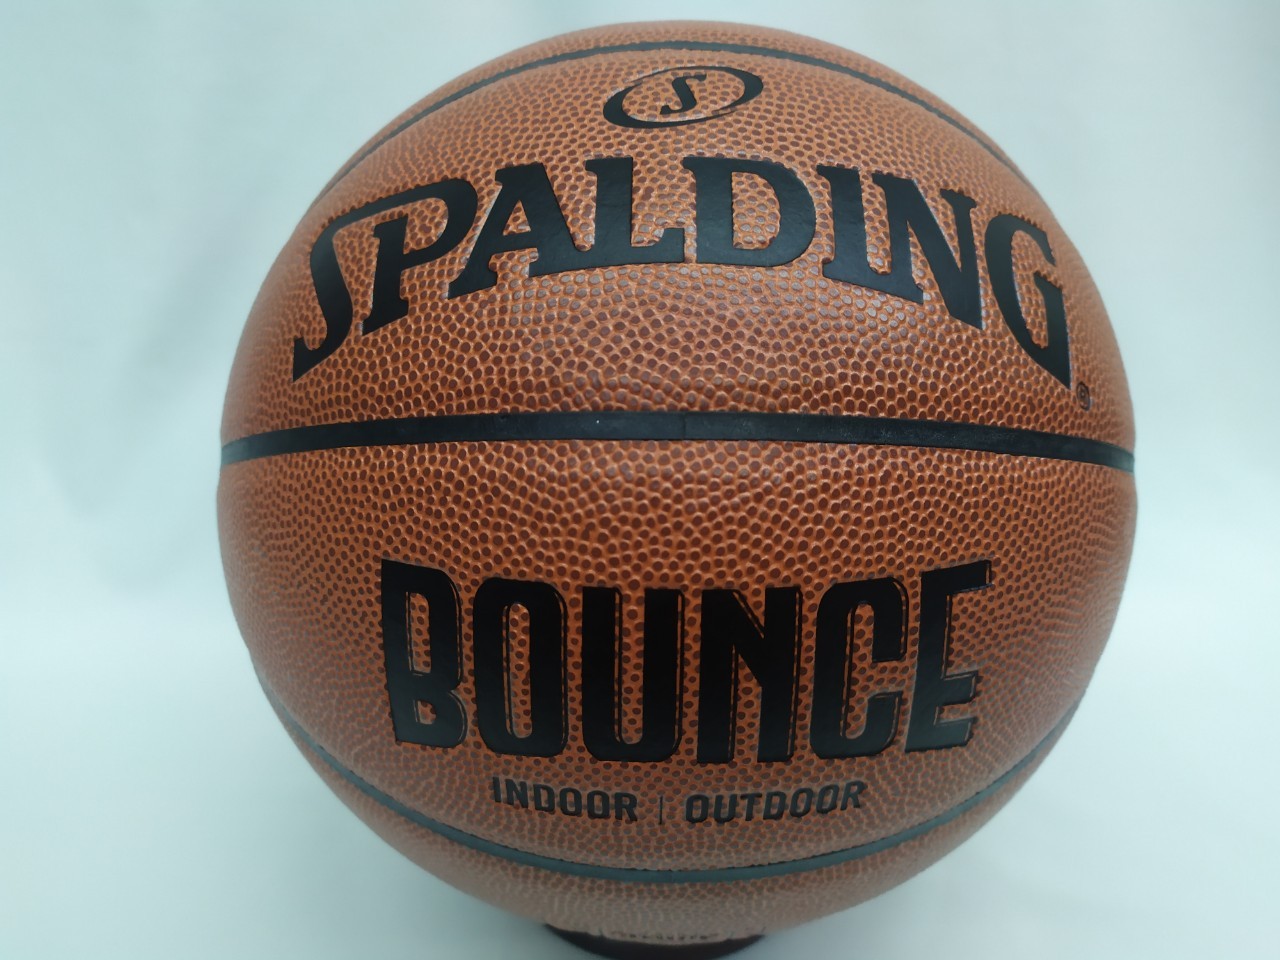 斯伯丁 籃球 SPALDING BOUNCE 籃球 PU材質 標準7號球 室內外用球SPB91001大自在